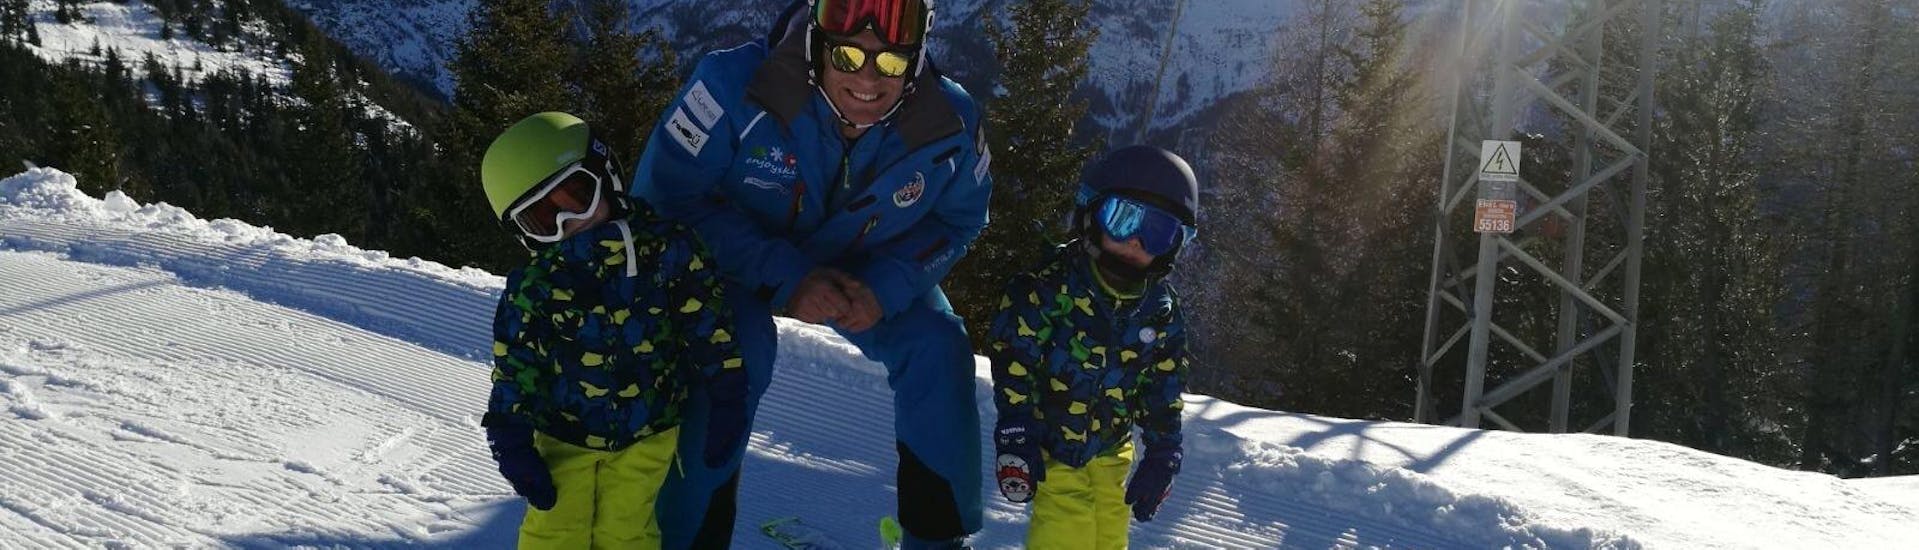 Skileraar lacht met twee kinderen tijdens een privé skiles voor kinderen op alle niveaus van Enjoyski School Valmalenco.